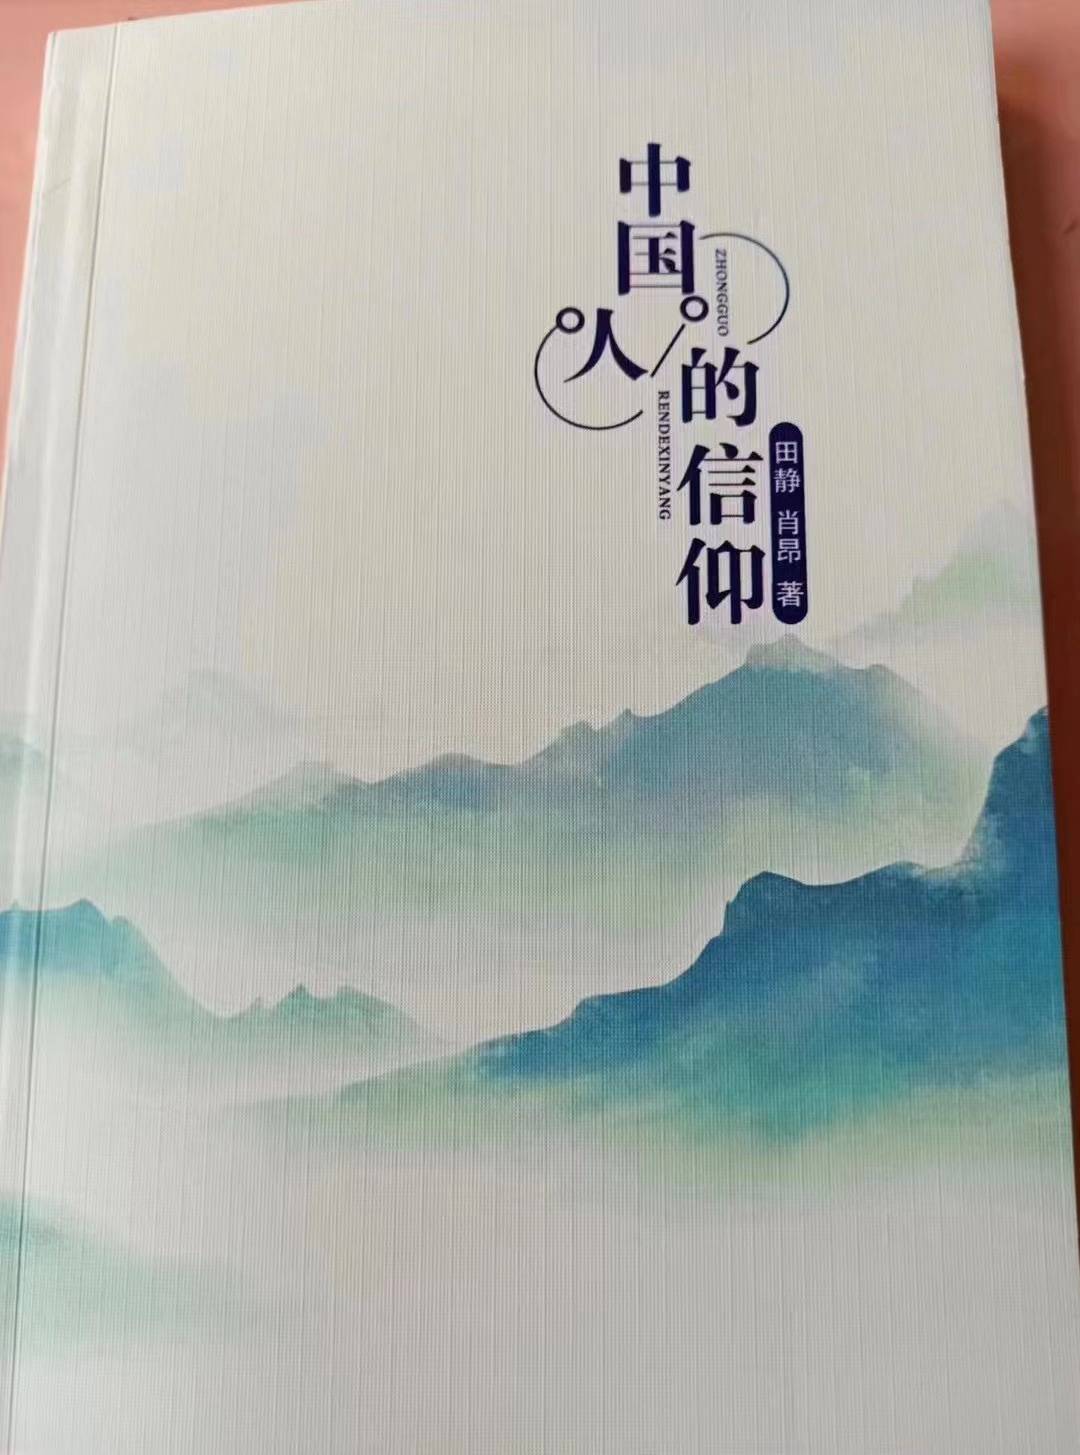 《中国人的信仰》出版发行 讲好中国故事 弘扬中国力量